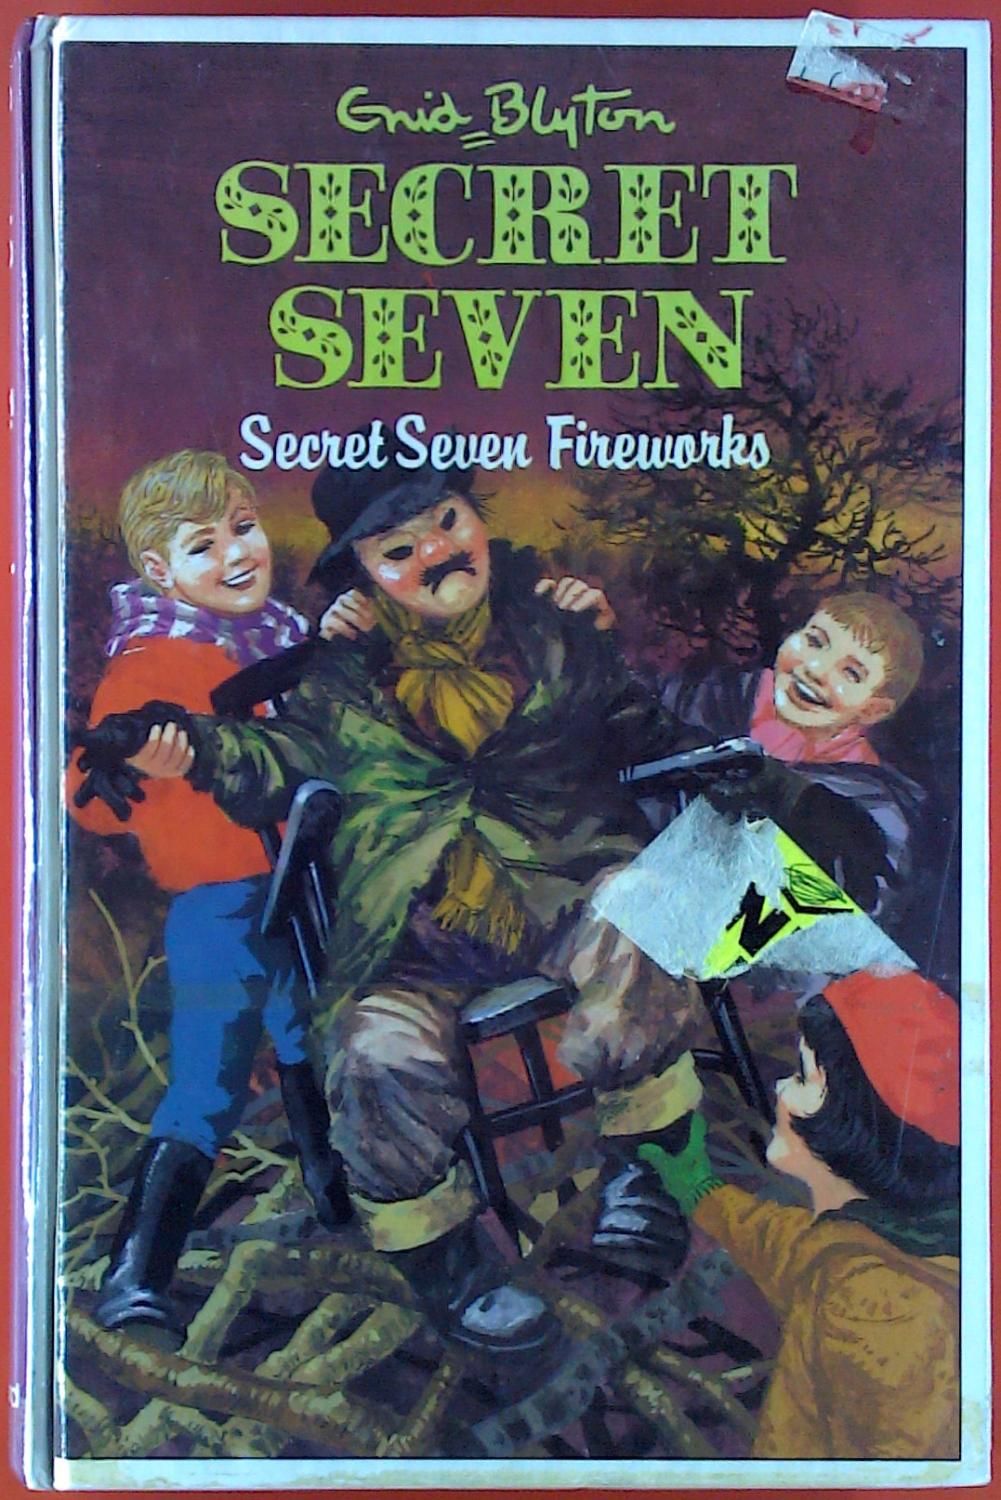 Secret Seven. Secret Seven Fireworks. - Enid Blyton